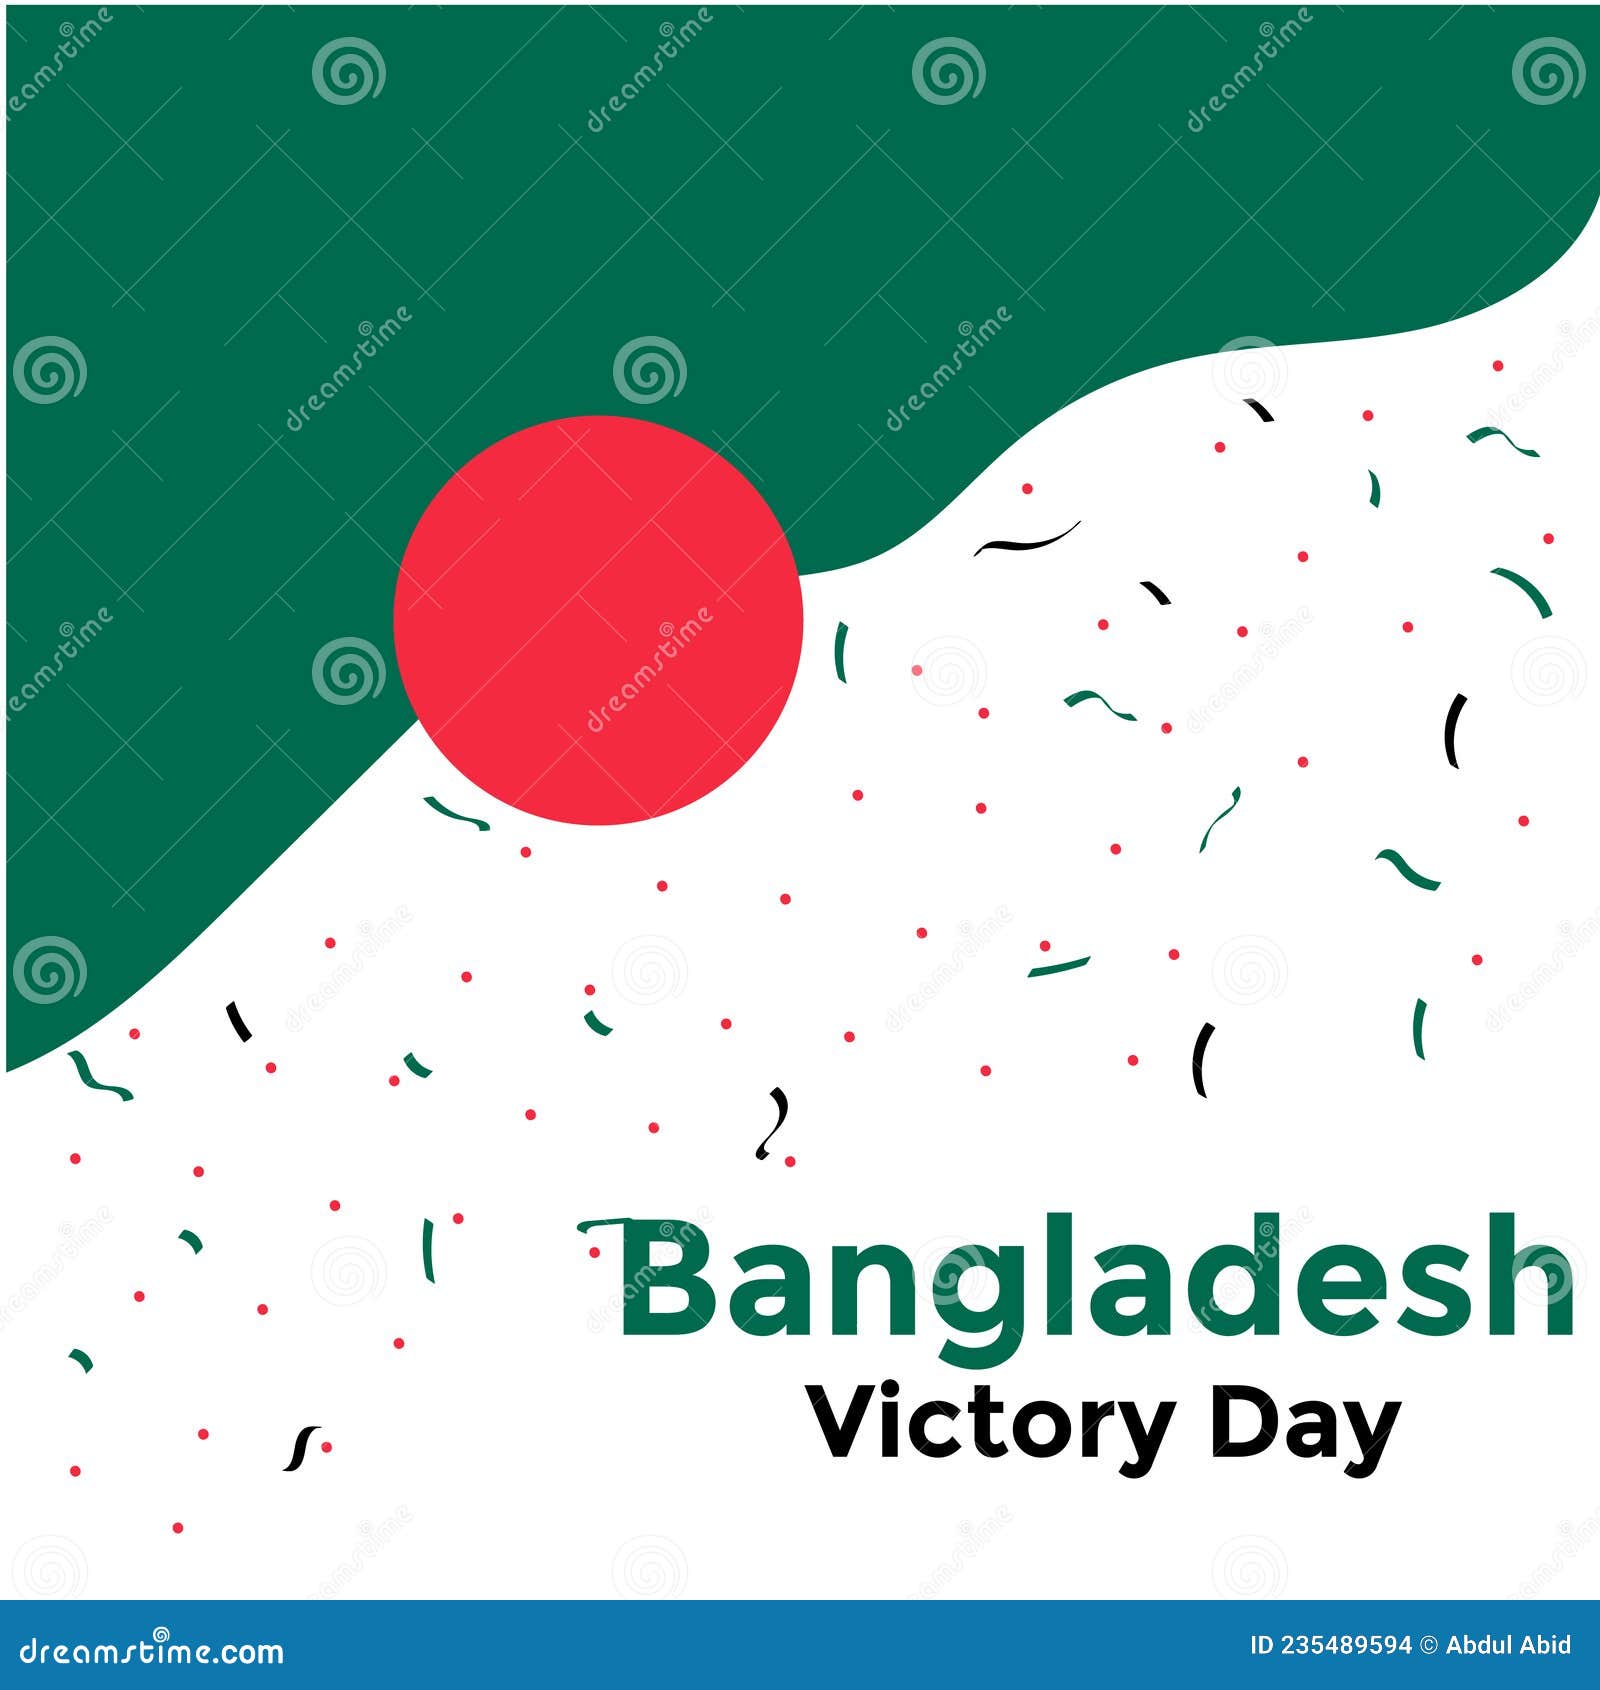 Victory Day, Bangladesh Victory Day, Victory Day Wallpaper, Bangladesh  Flag, Bangladesh, Bangla Flag, Green Color Flag Stock Illustration -  Illustration of color, flag: 235489594